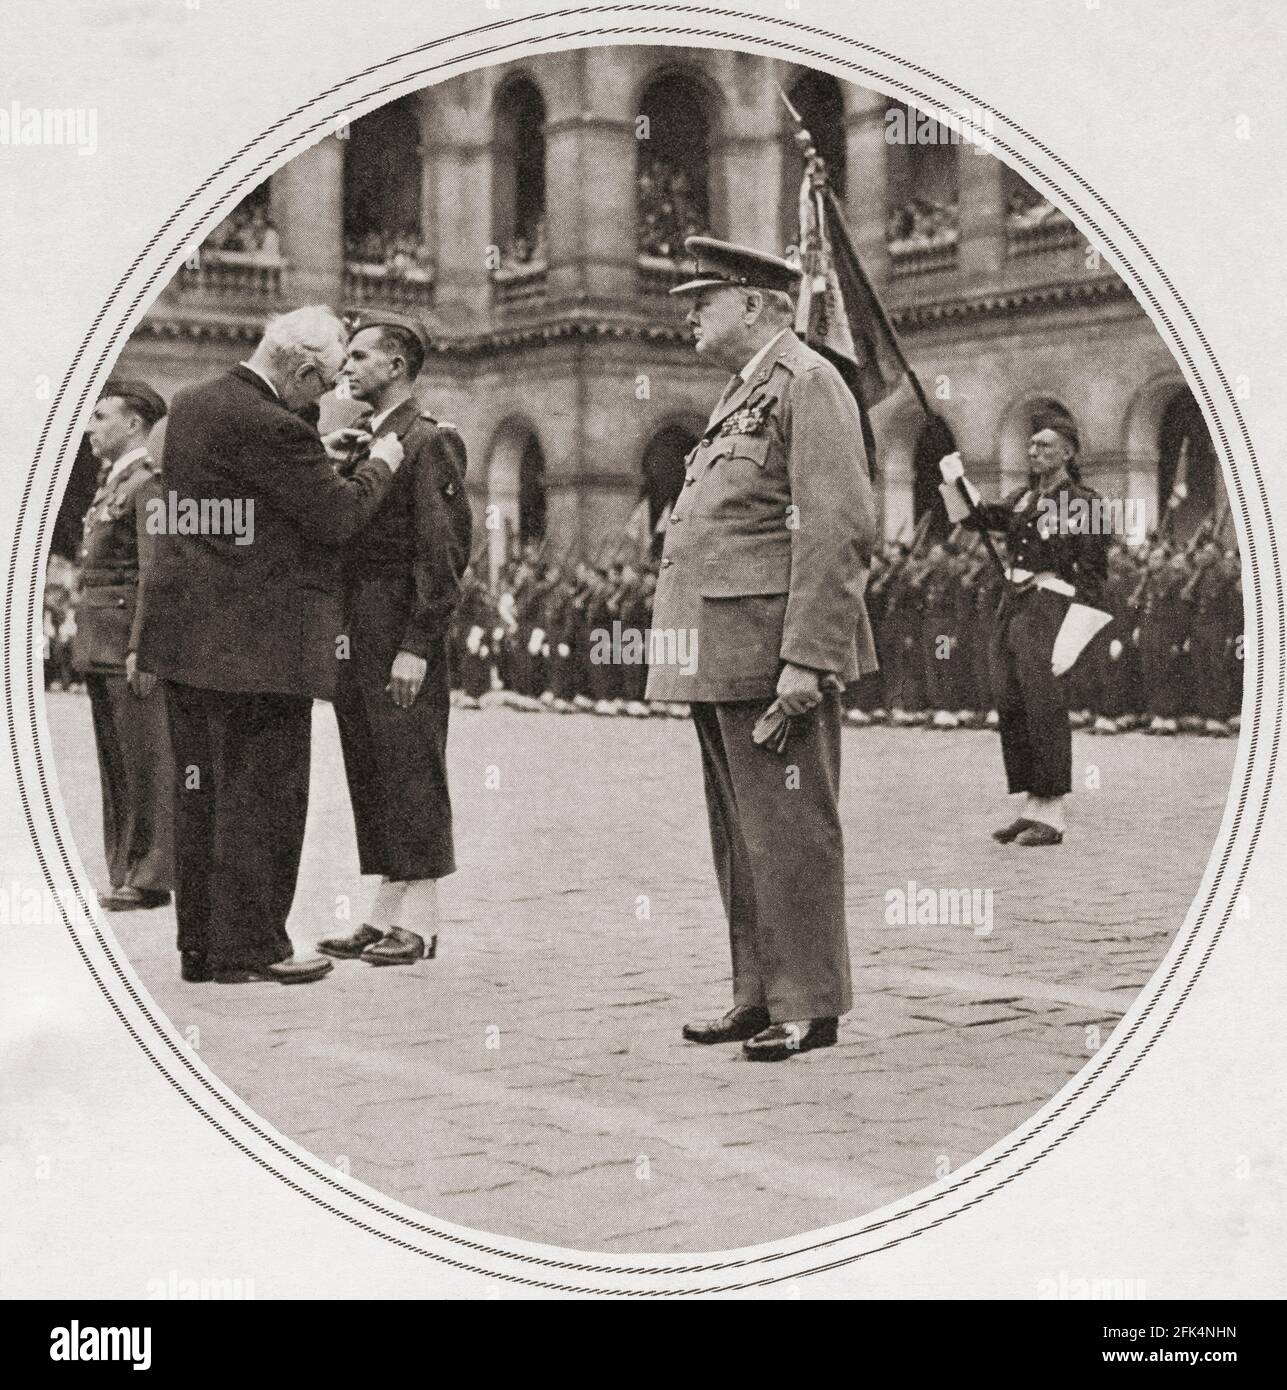 Winston Churchill decorato con il più alto onore militare della Francia, il Medaille Militaire, nel cortile degli Invalides, Parigi, Francia, 1947. Sir Winston Leonard Spencer-Churchill, 1874 – 1965. Politico britannico, ufficiale dell'esercito, scrittore e due volte primo ministro del Regno Unito. Foto Stock